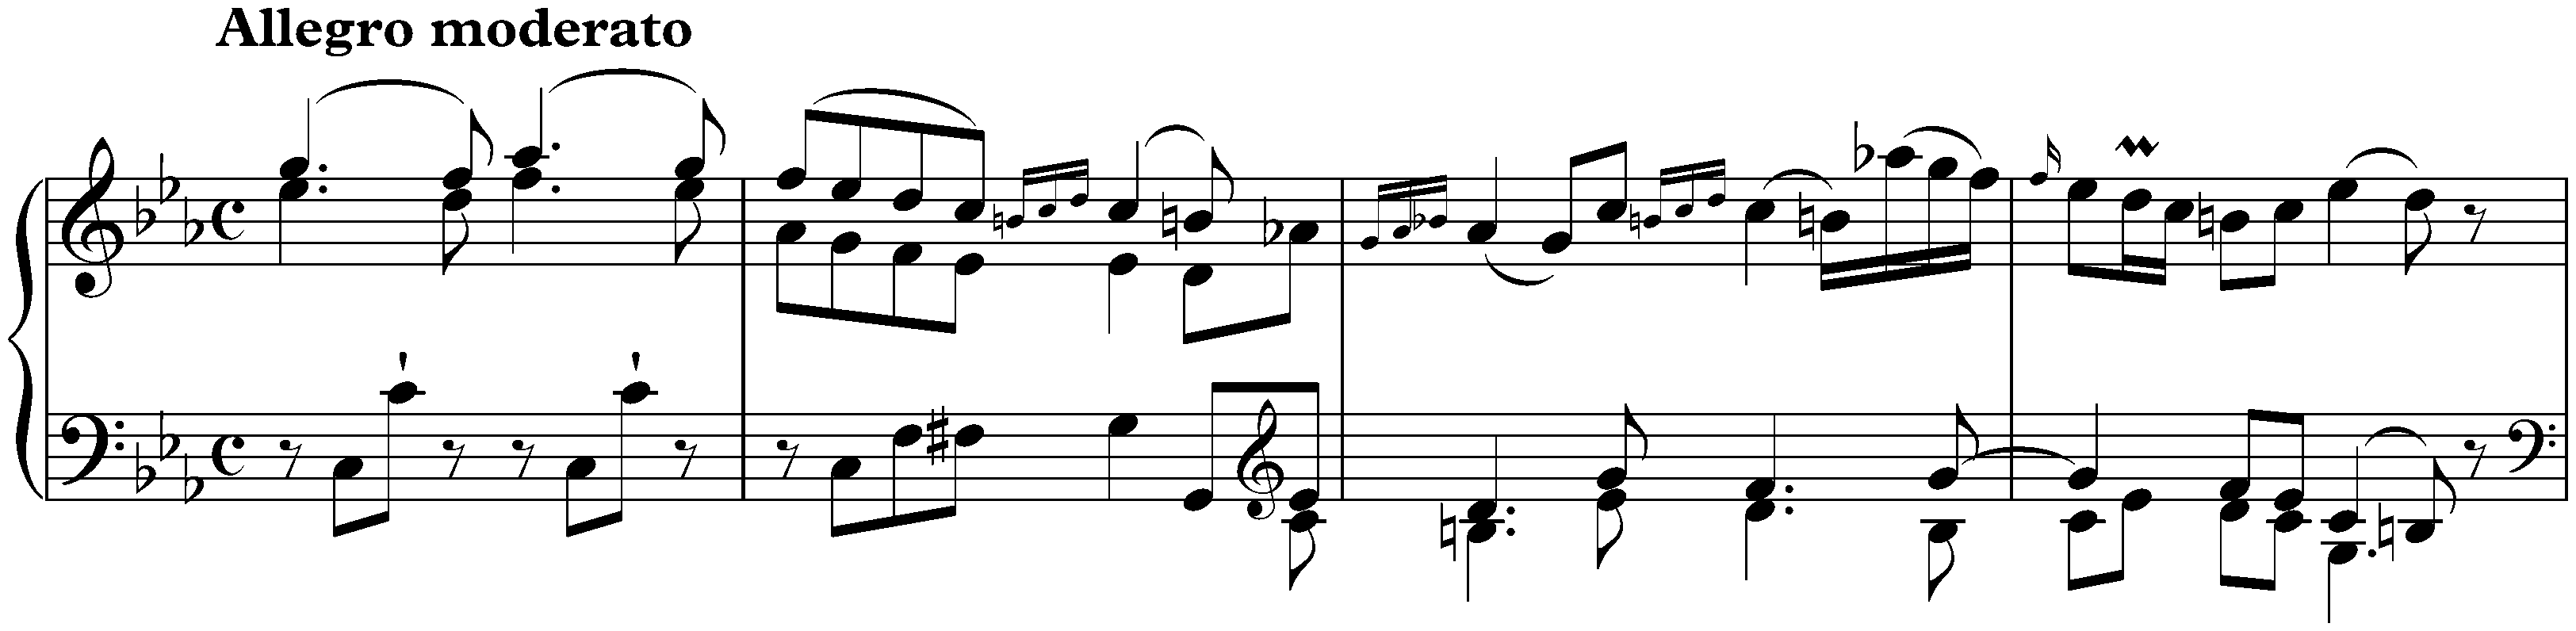 Sonata in C minor, Hob. XVI:20; 1. Allegro moderato